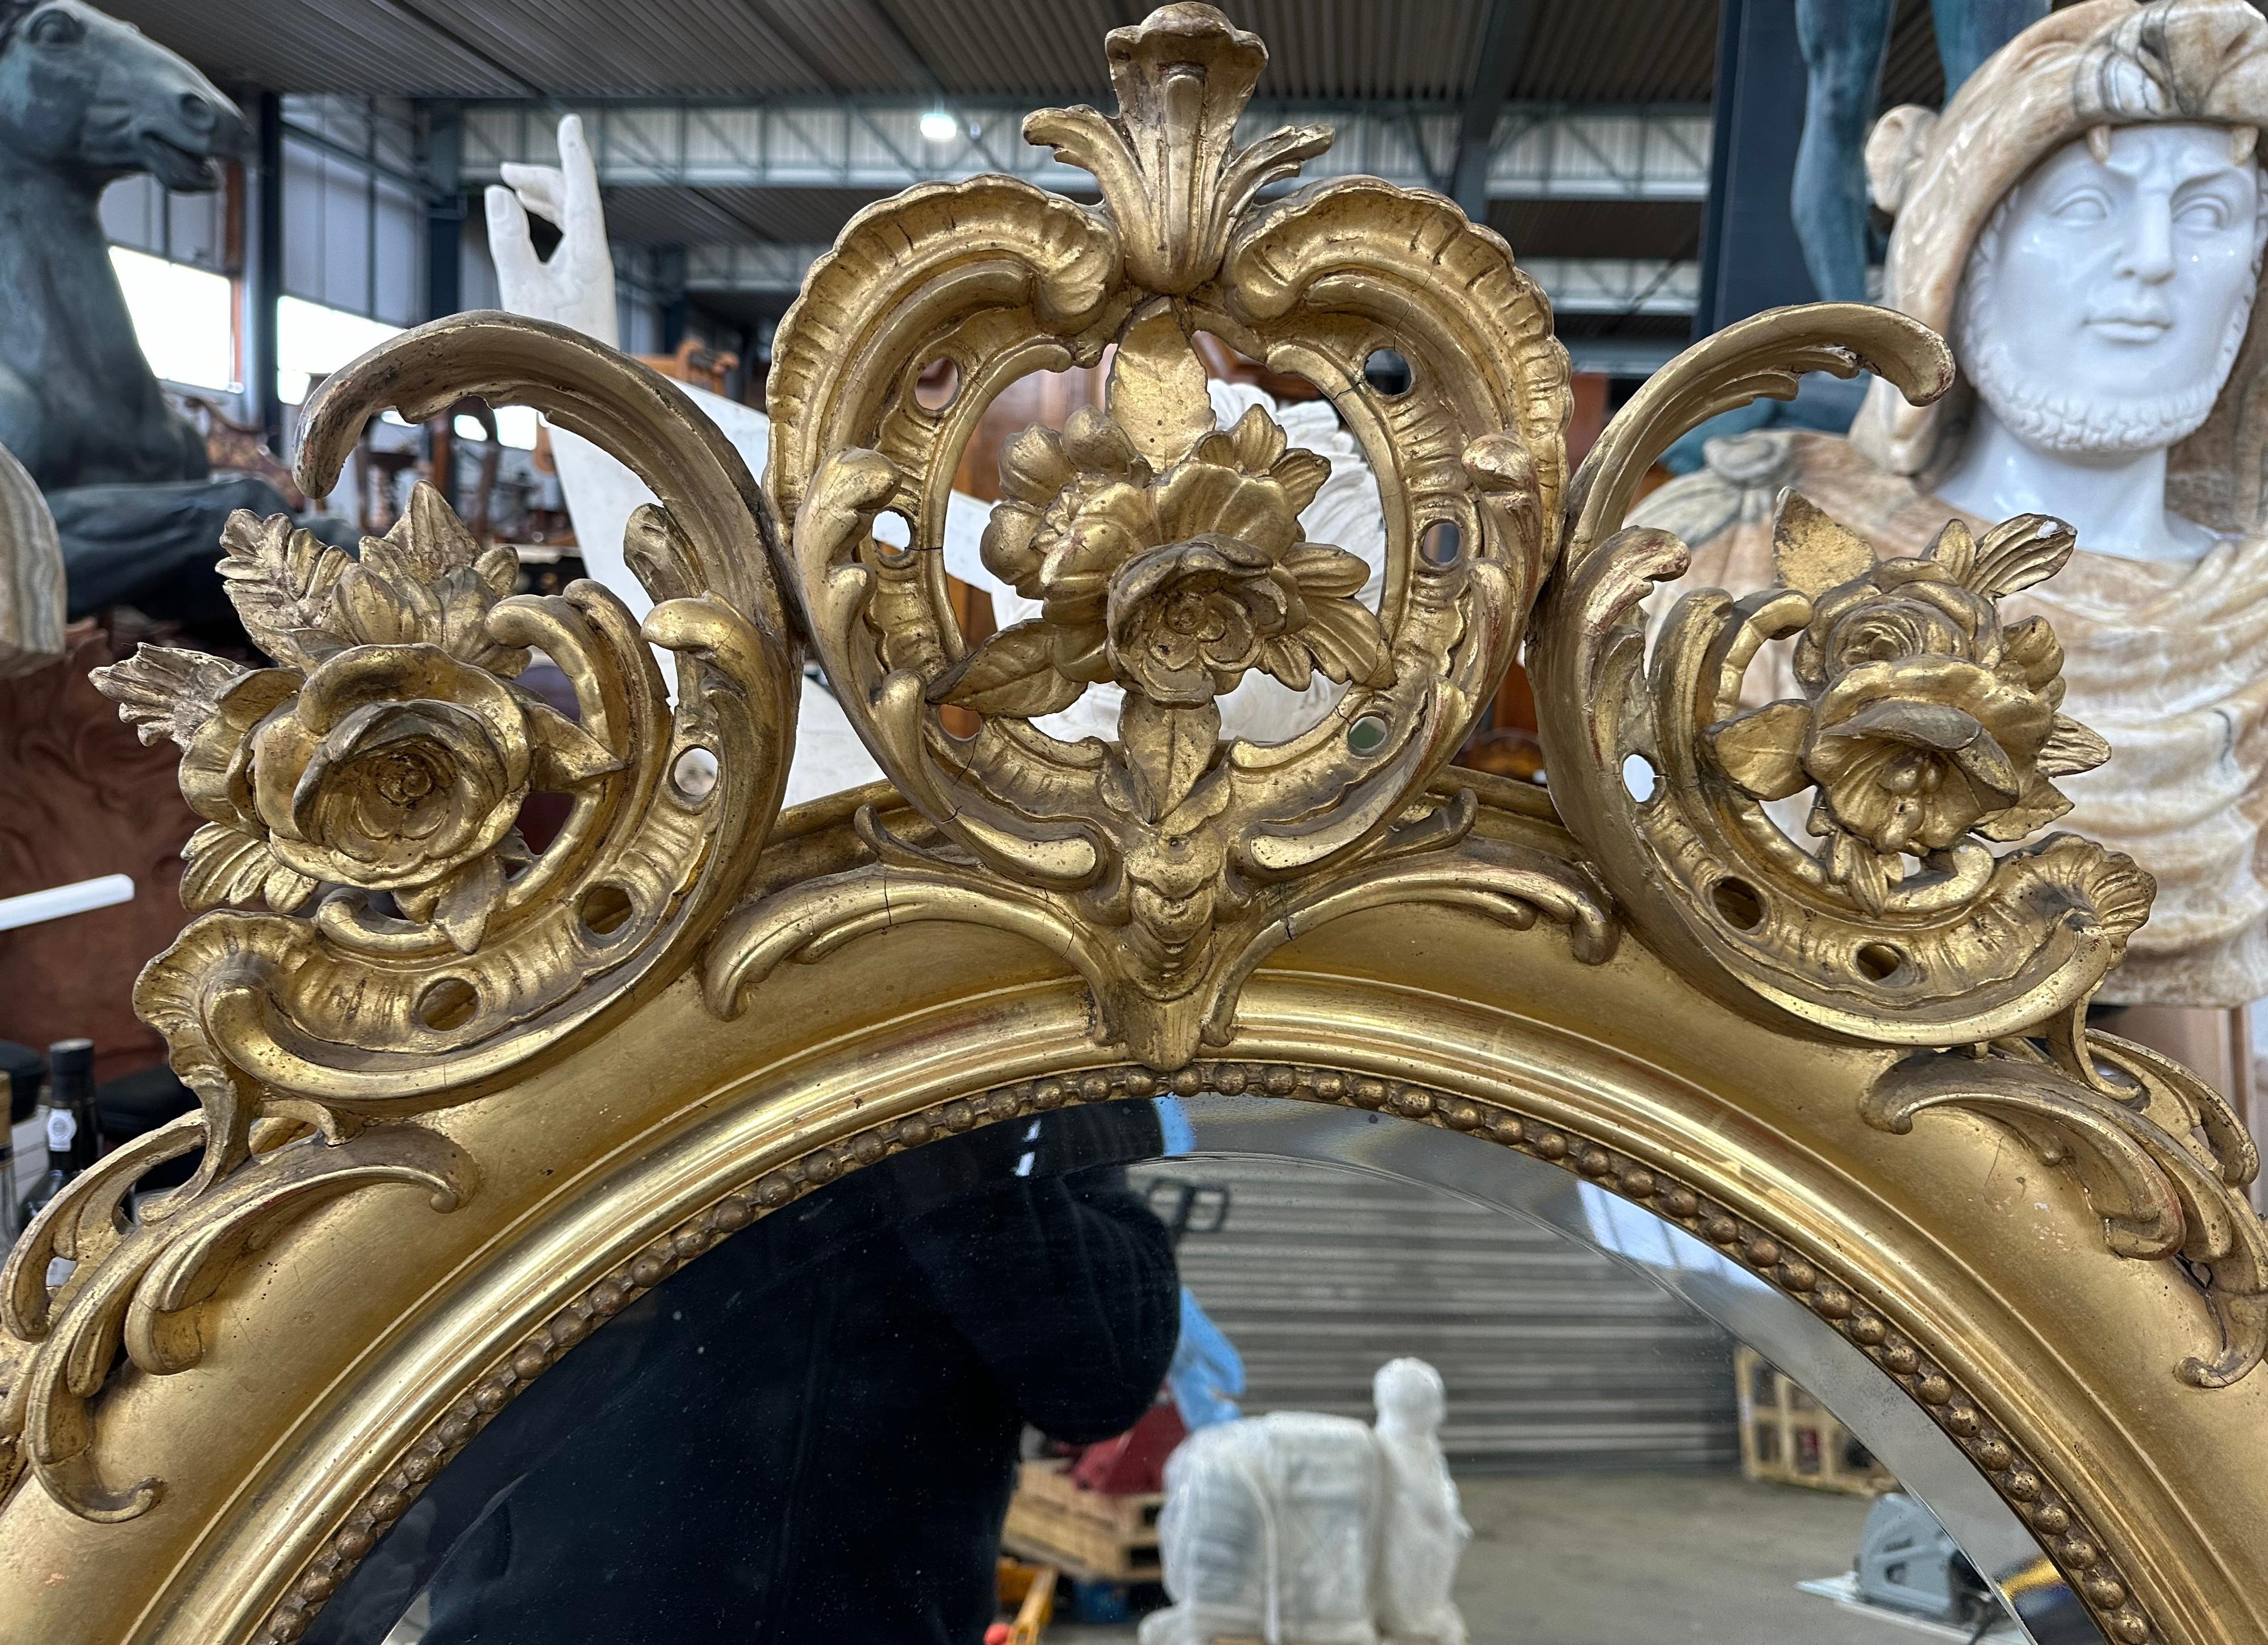 Miroir décoratif français en bois doré avec des sculptures florales et une crête élaborée avec trois panaches au sommet formés de rinceaux et de feuillages. Le verre ovale est biseauté avec des perles dorées. Un miroir très attrayant qui donne une